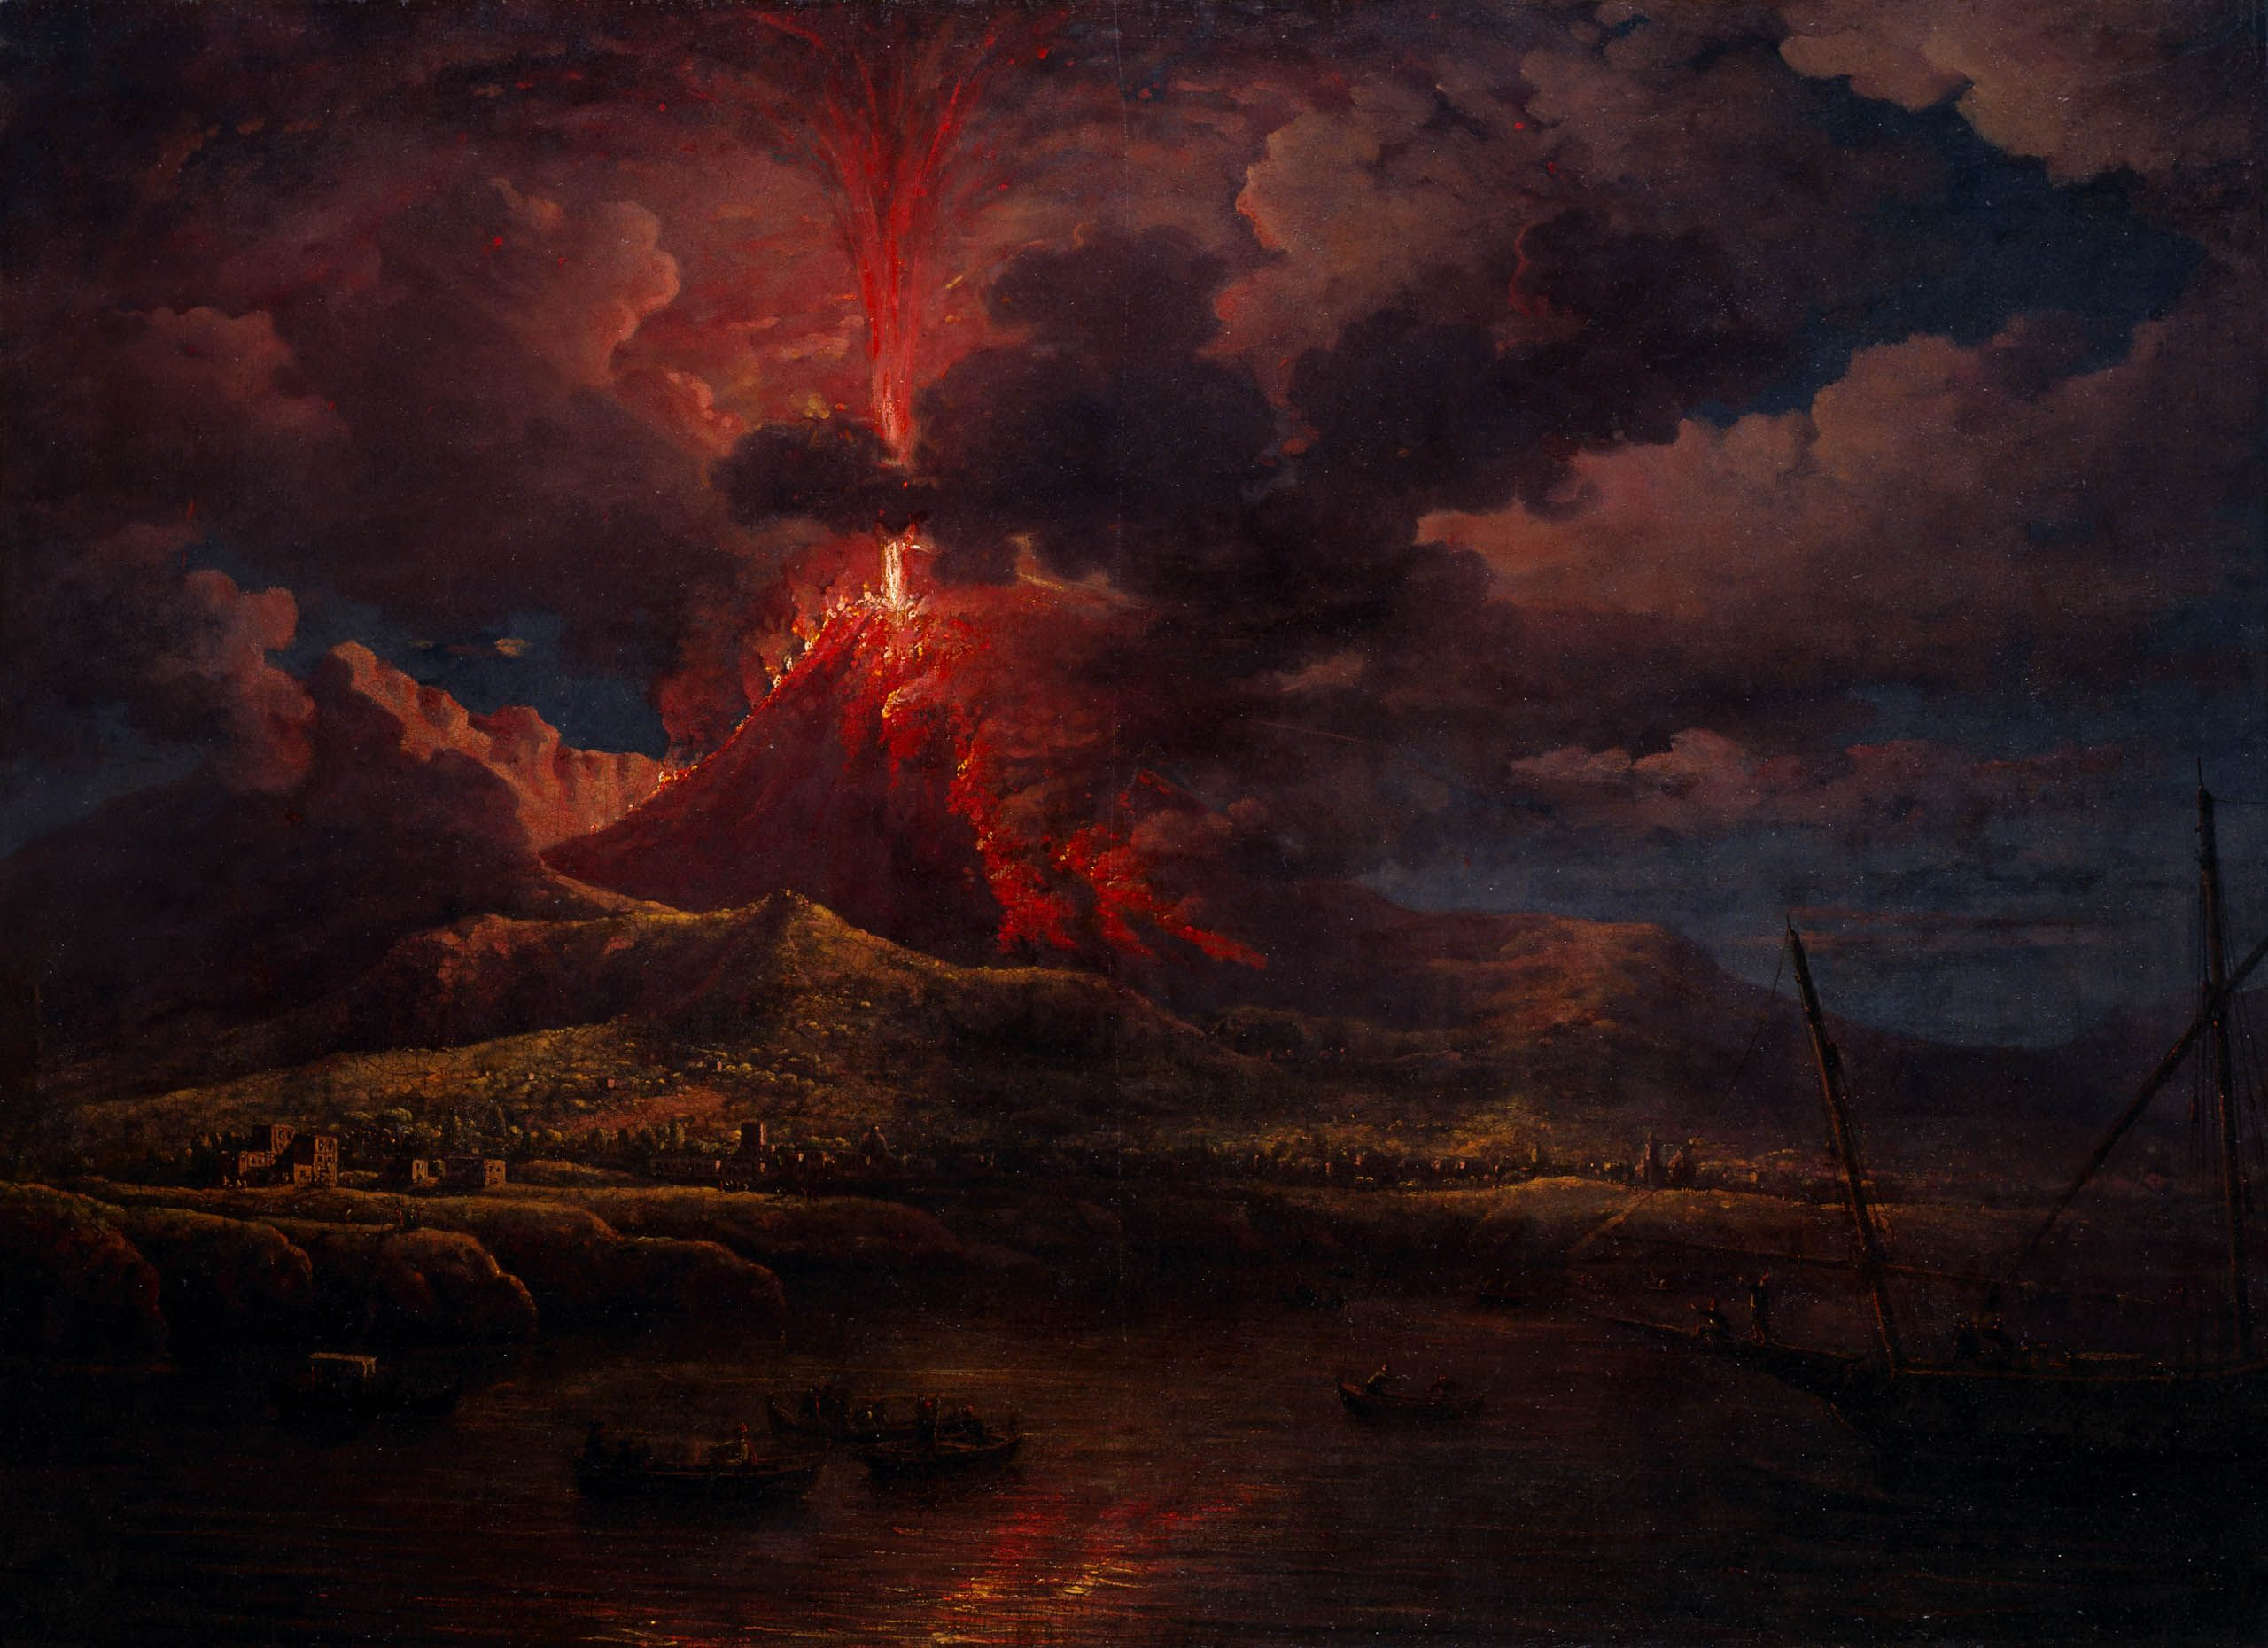 General 2560x1860 Vesuvius erupting at Night William Marlow classic art painting